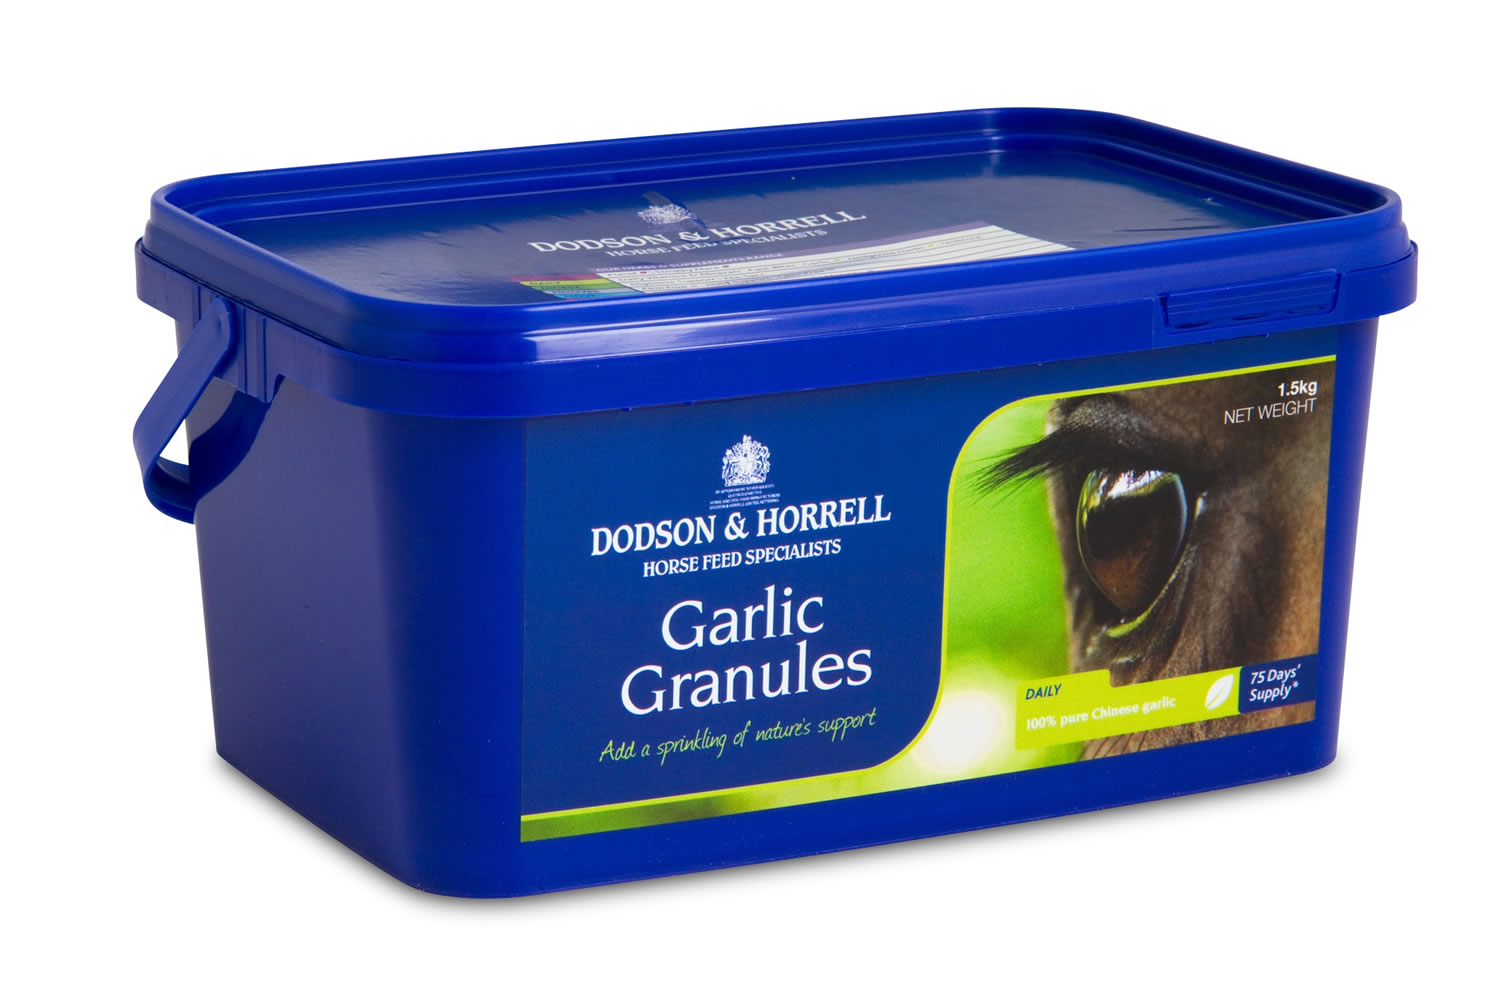 DODSON & HORRELL GARLIC GRANULES 1.5 KG 1.5 KG